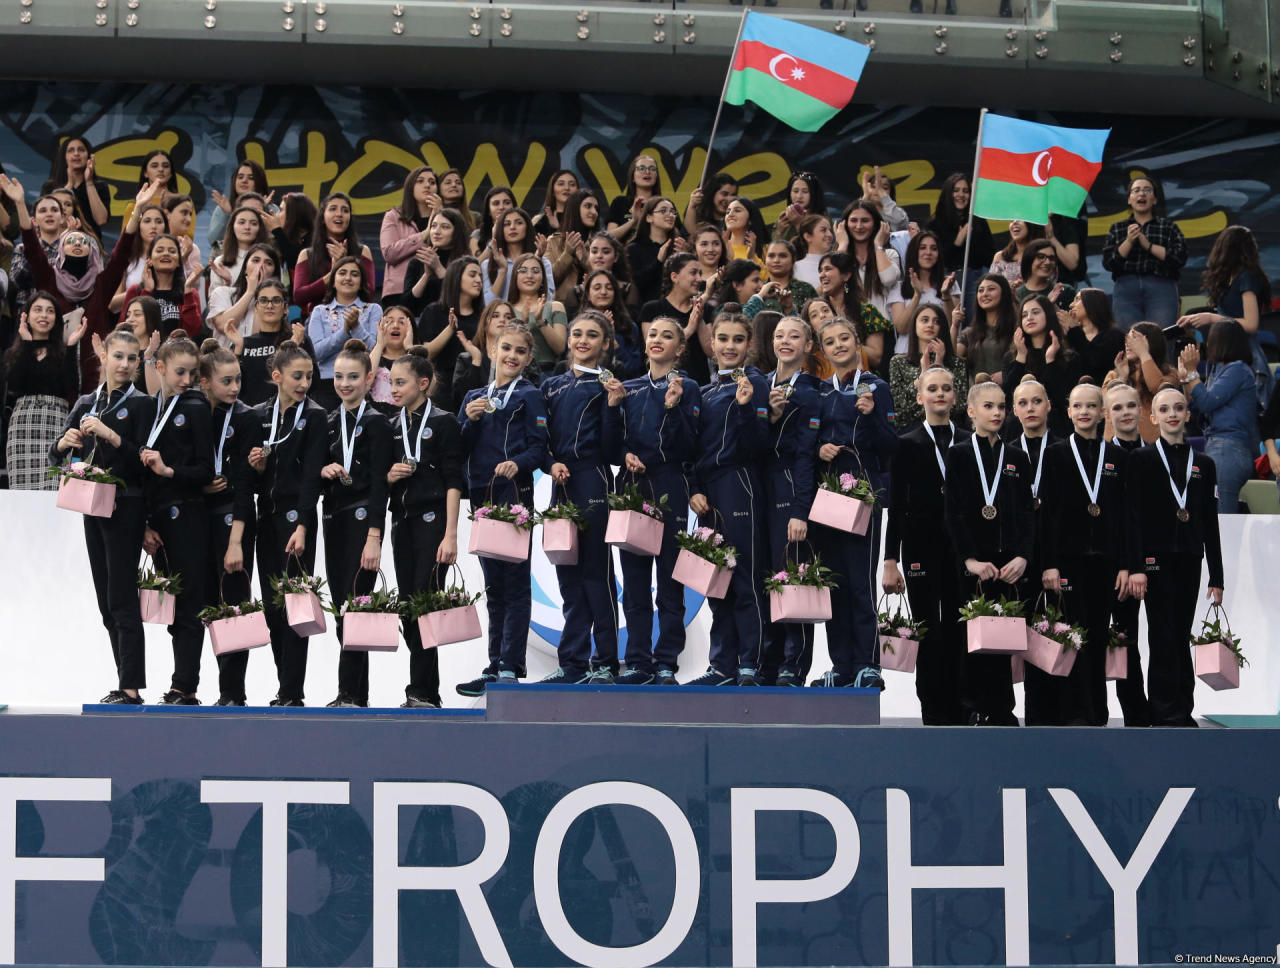 У Азербайджана «золото» и «серебро»: в Баку награждены победители AGF Junior Trophy среди команд в групповых упражнениях с пятью обручами и пятью лентами